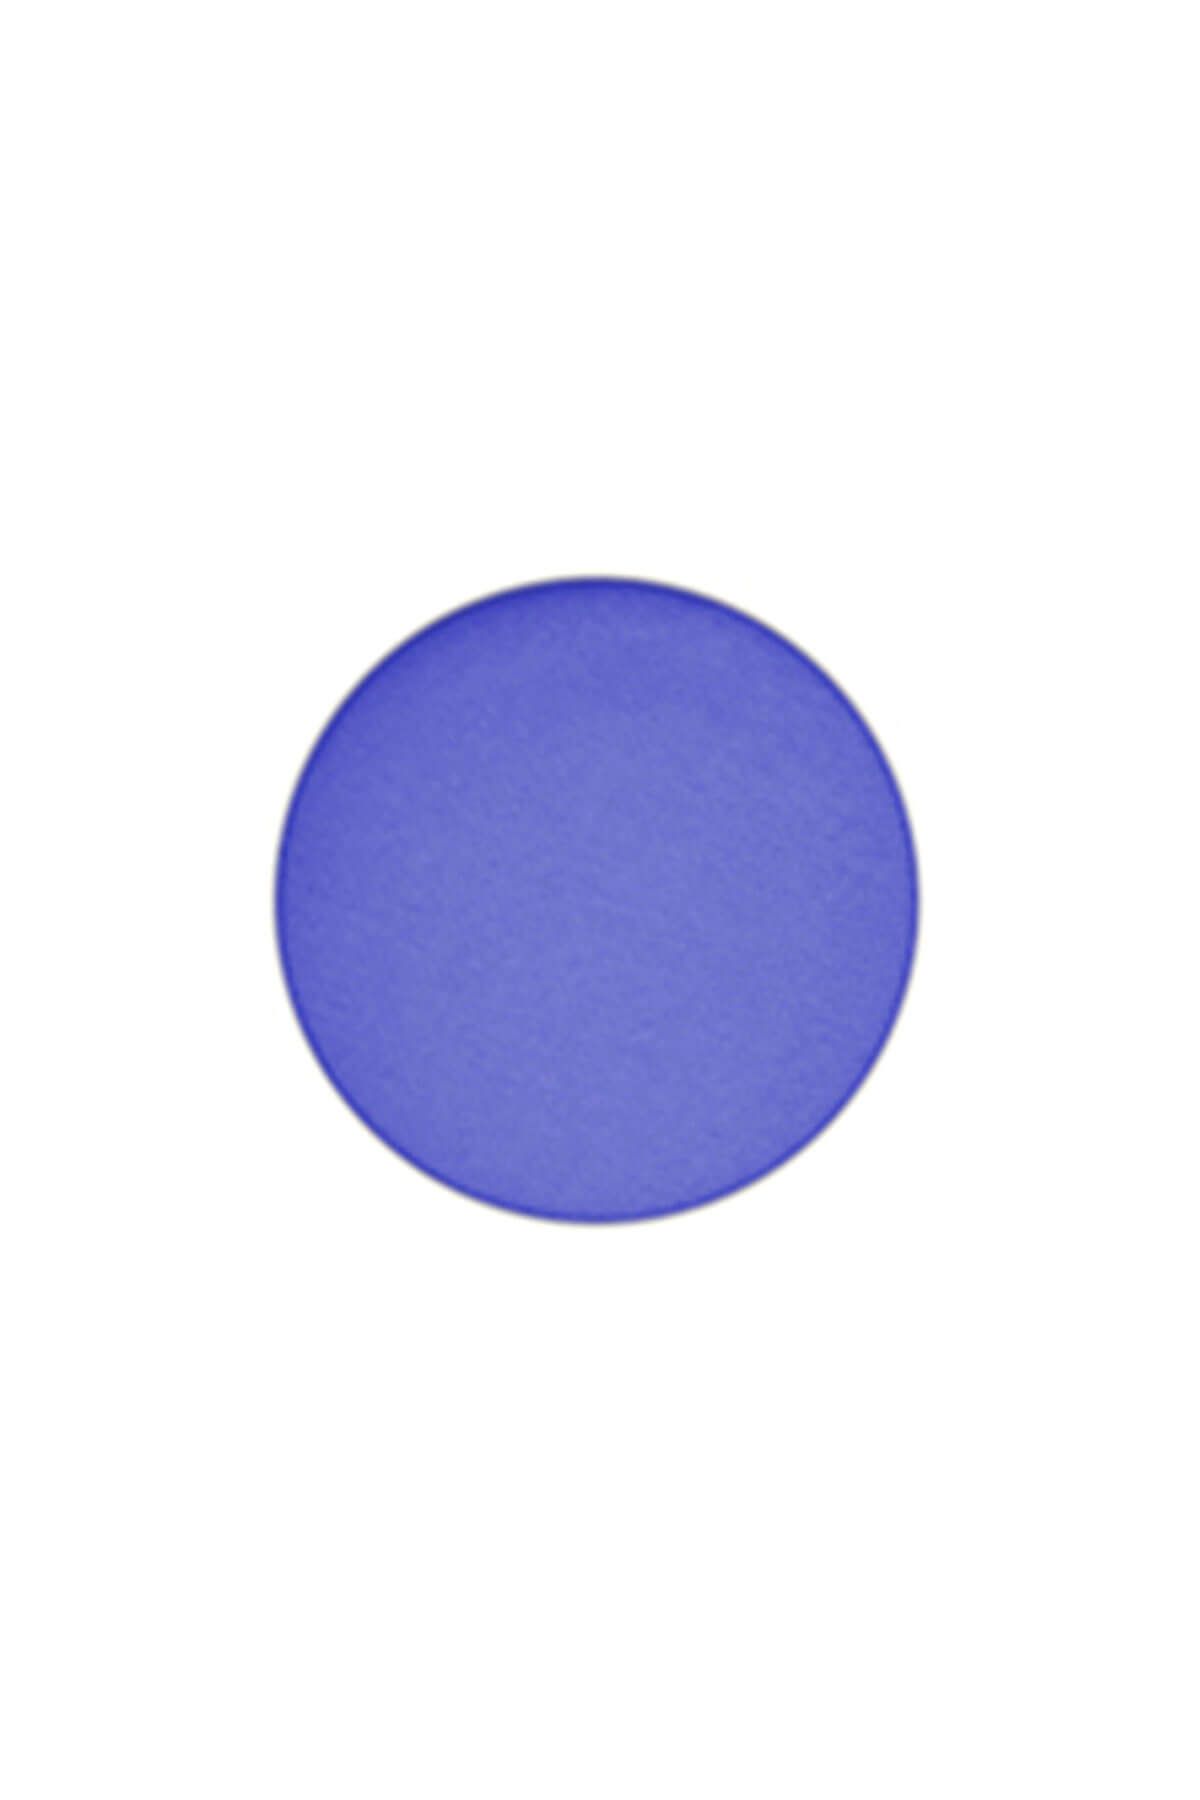 Mac Göz Farı - Refill Far Cobalt 1.5 g 773602351633